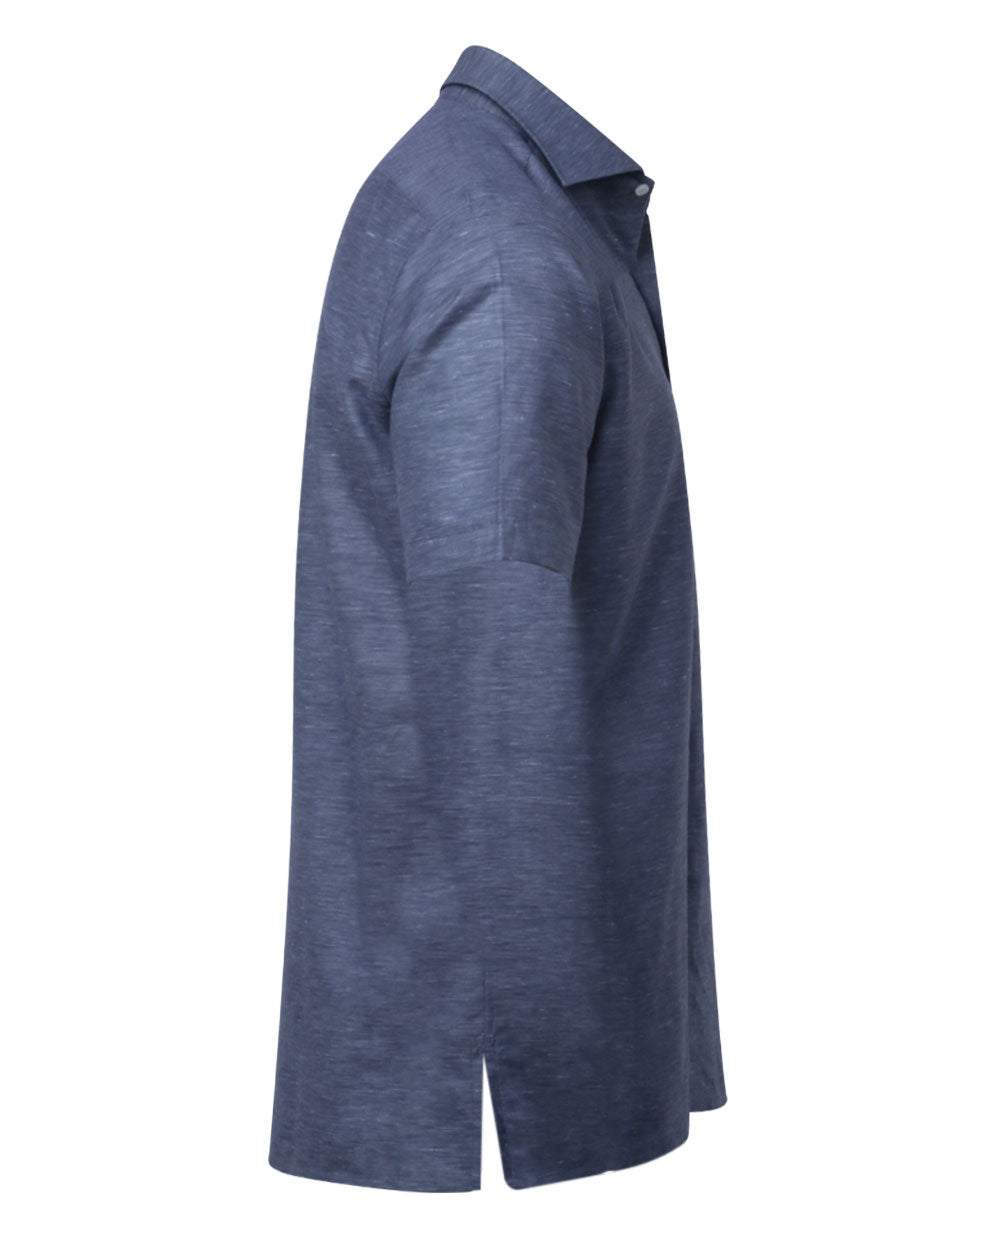 Dark Blue Heathered Short Sleeve Sportshirt